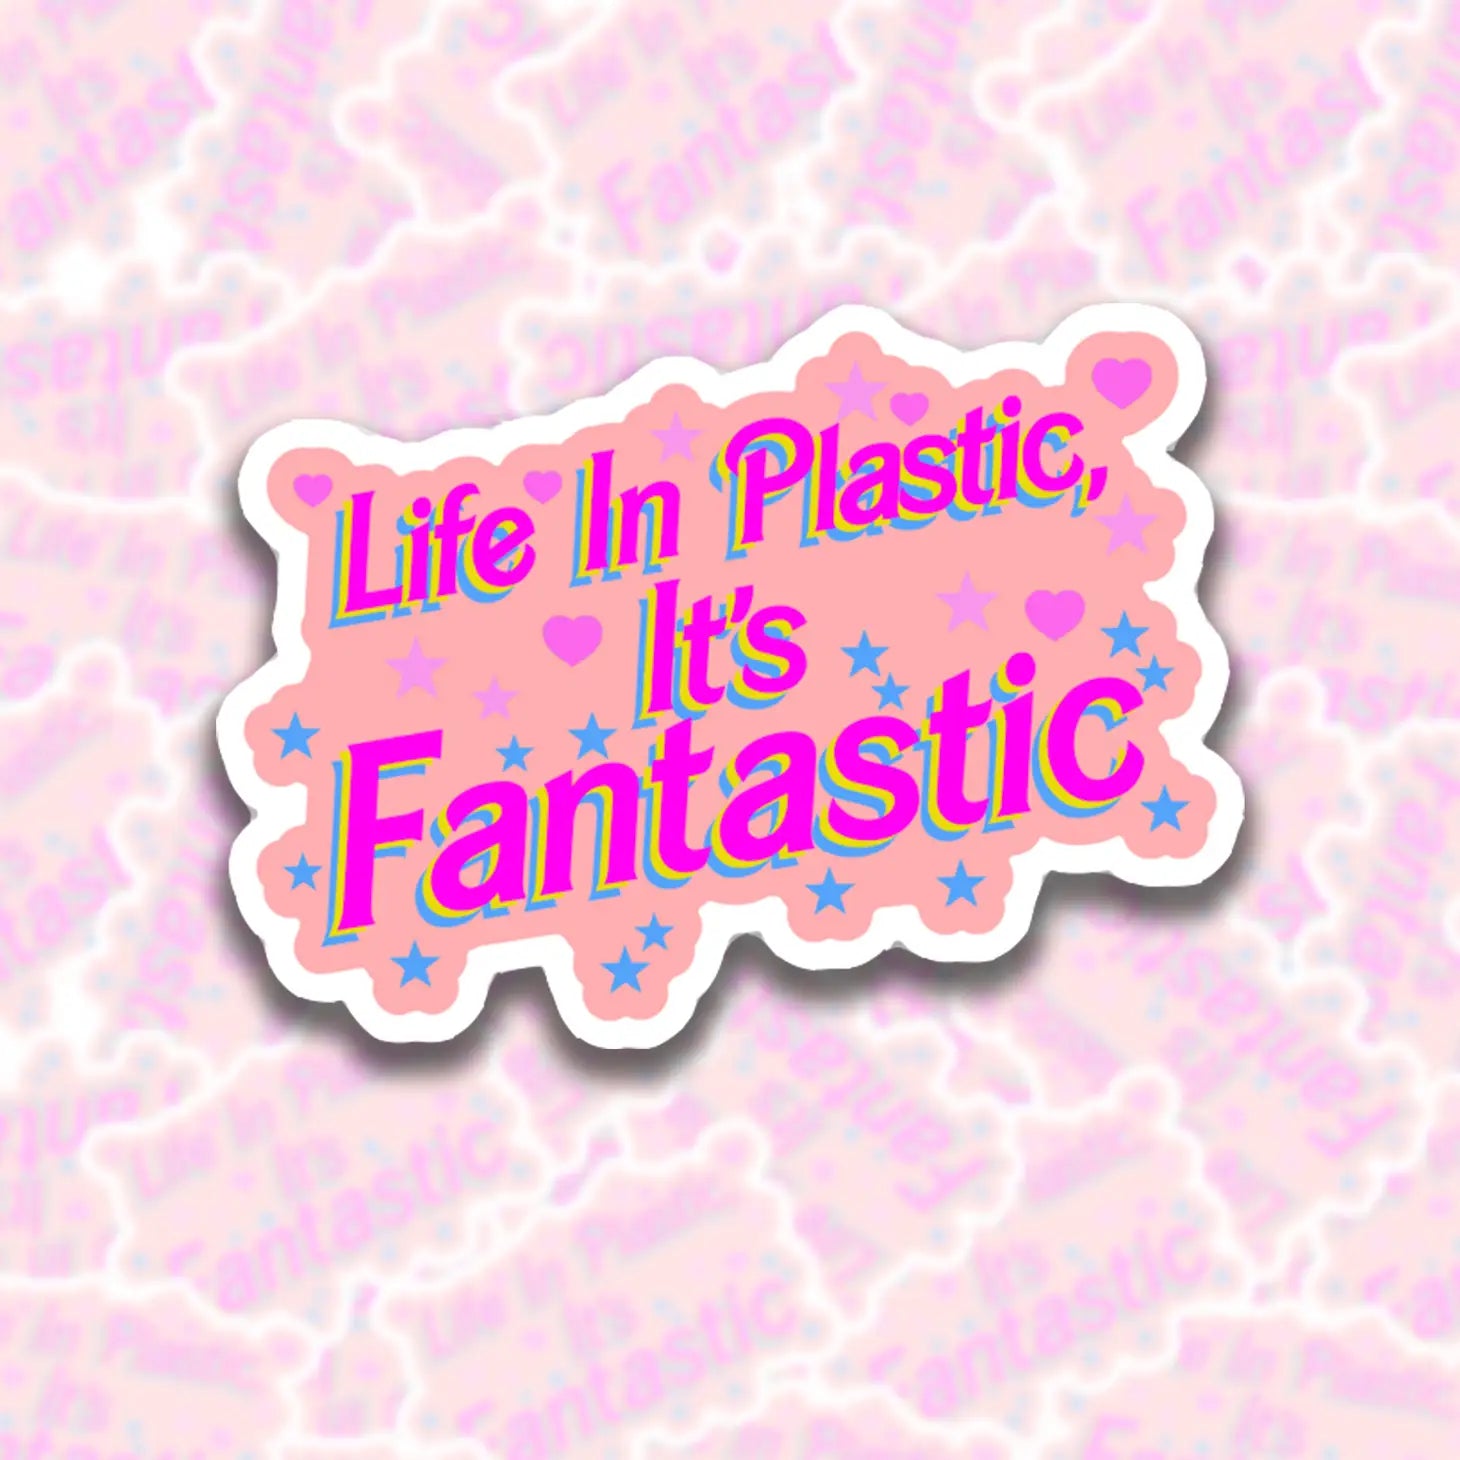 Life in Plastic, It's Fantastic.